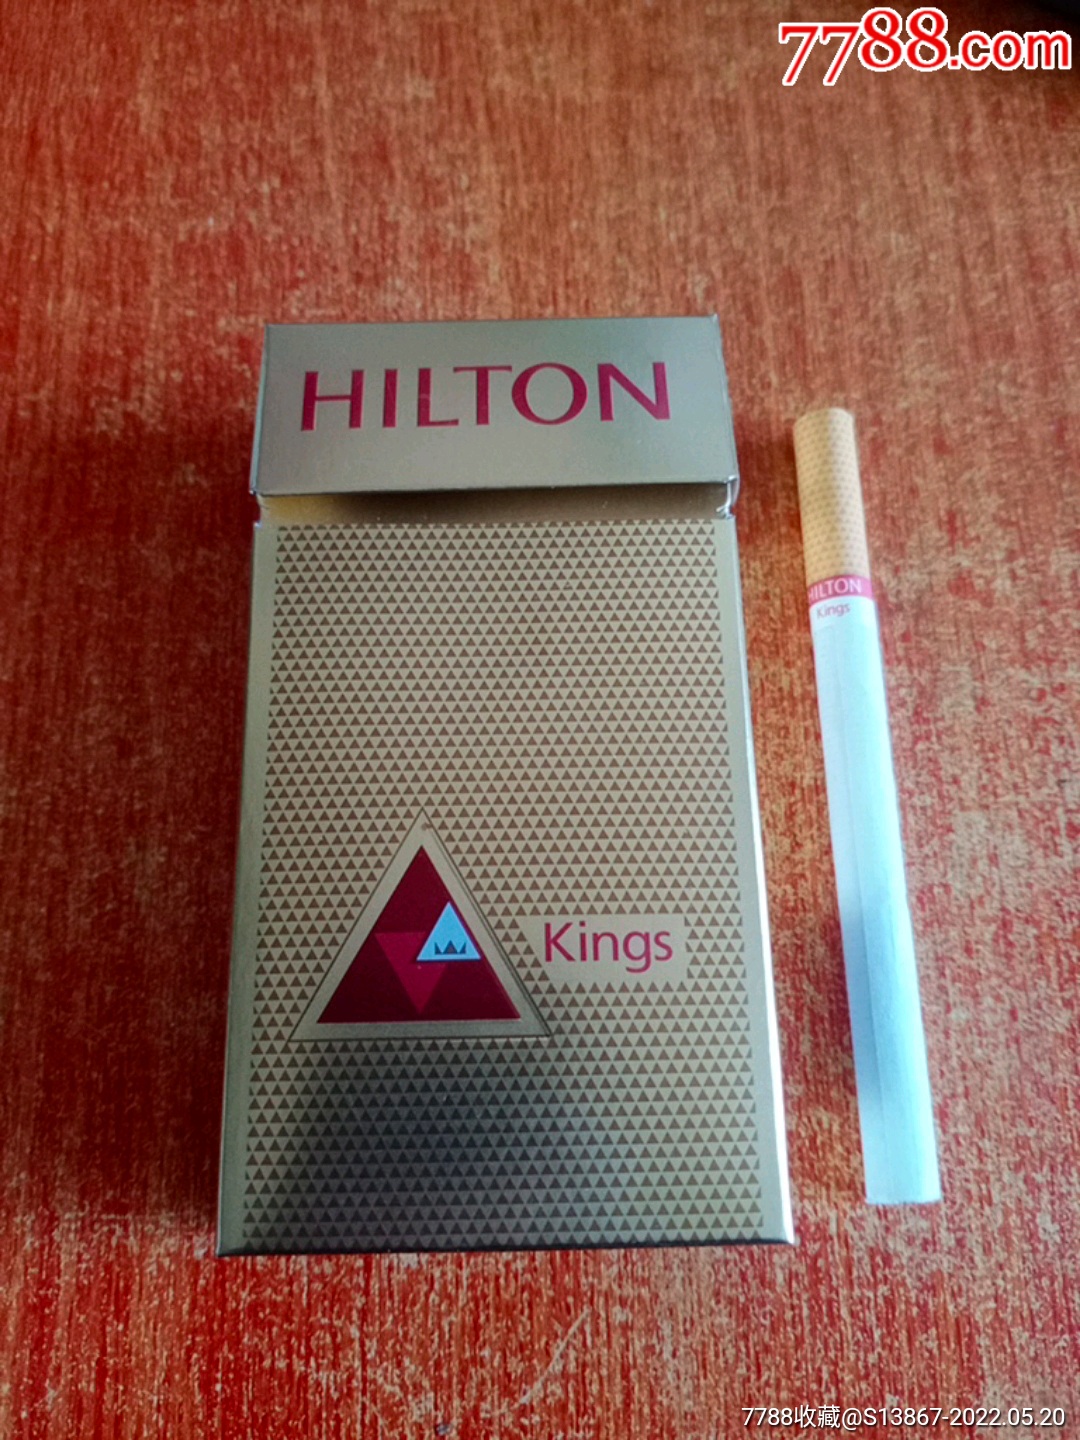 软希尔顿香烟图片